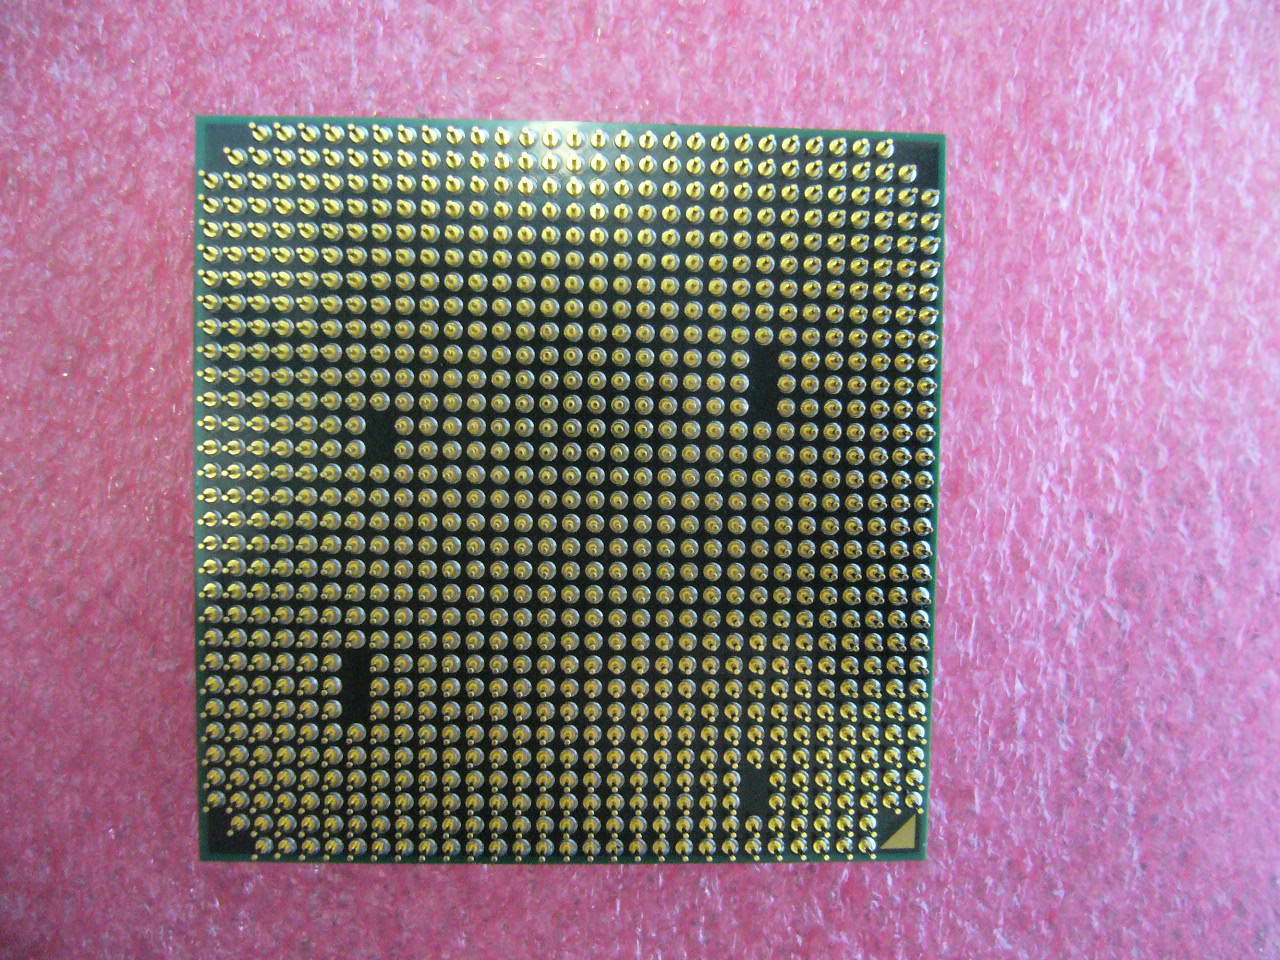 Amd athlon x2 сокет. Athlon II 425 x3 am3. Athlon x2 250 сокет. AMD Athlon II Socket am3. AMD Athlon II x2 250 am3, 2 x 3000 МГЦ.